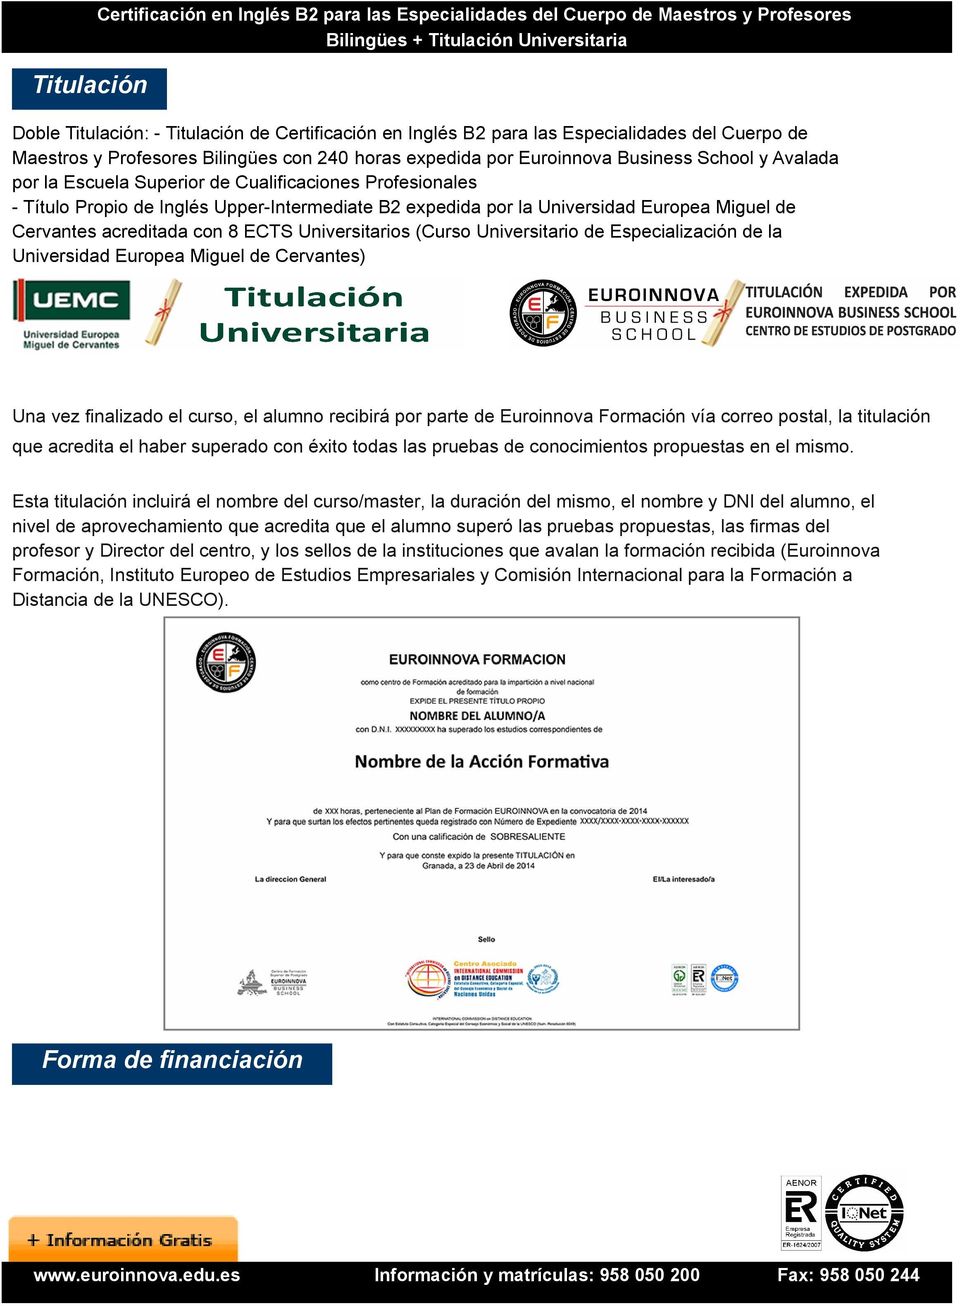 B2 expedida por la Universidad Europea Miguel de Cervantes acreditada con 8 ECTS Universitarios (Curso Universitario de Especialización de la Universidad Europea Miguel de Cervantes) Una vez